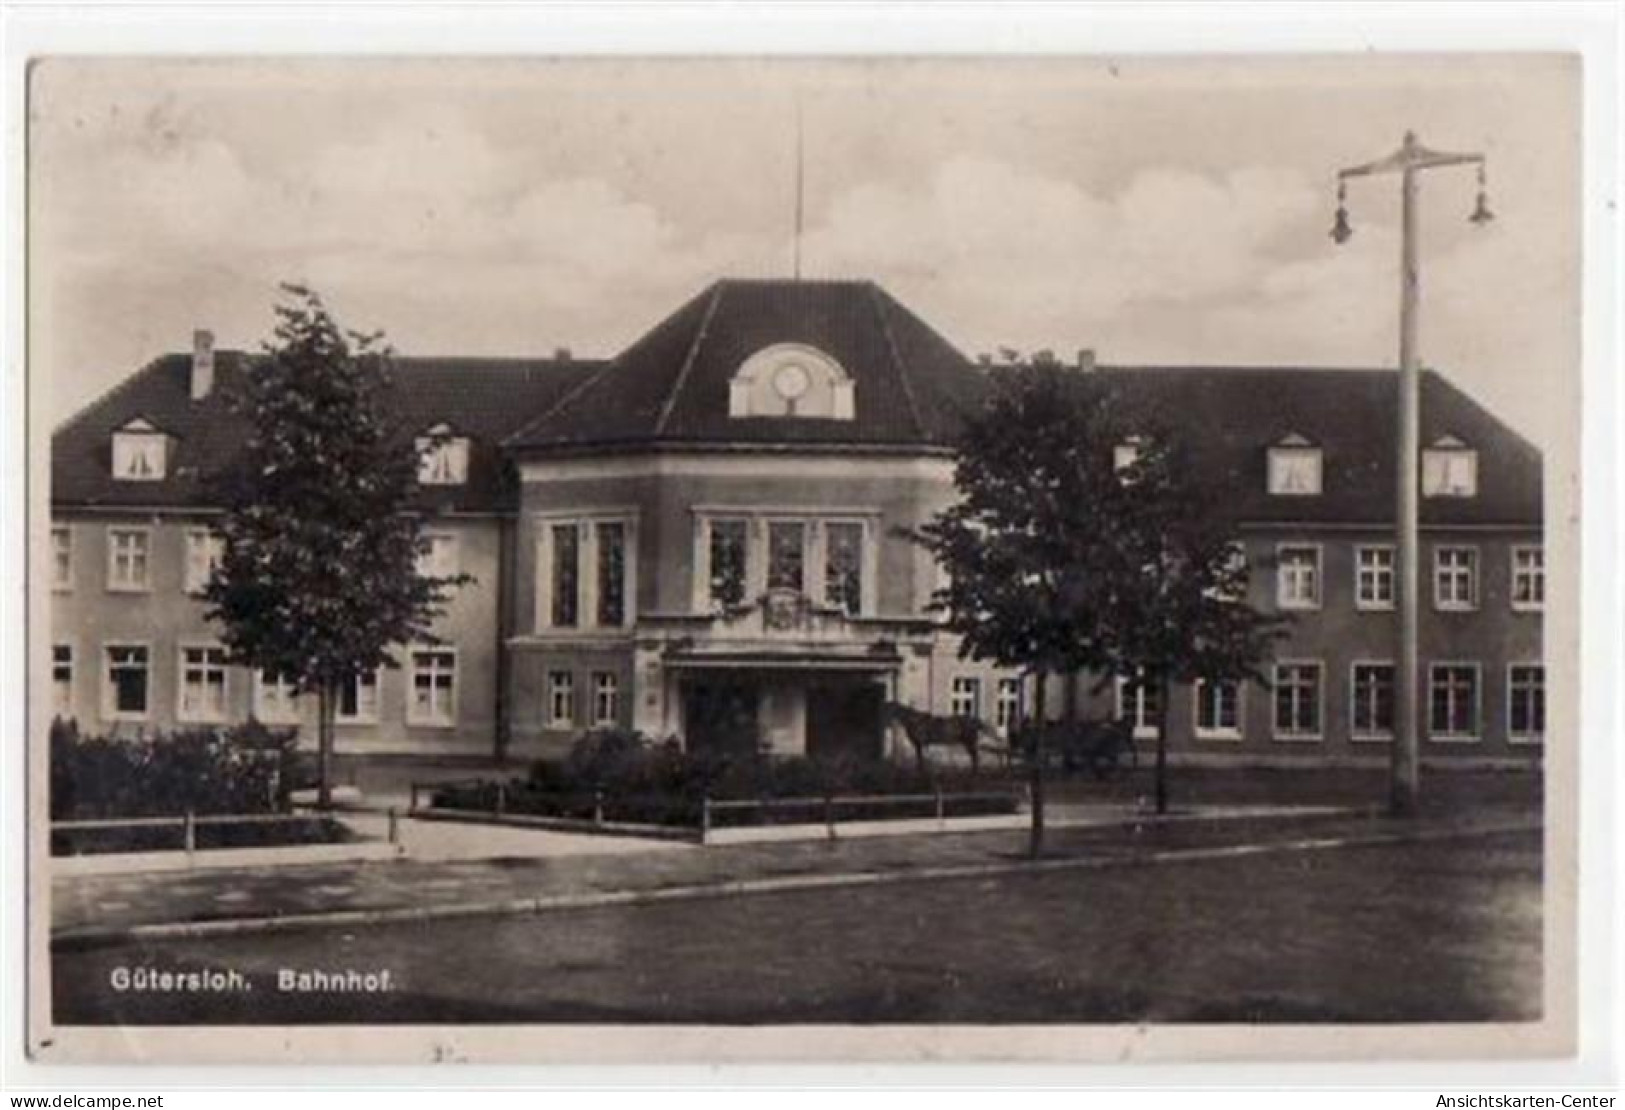 39064906 - Guetersloh Mit Bahnhof Gelaufen, Mit Marke Und Stempel Von 1930. Leicht Buegig, Leicht Fleckig, Sonst Gut Er - Gütersloh